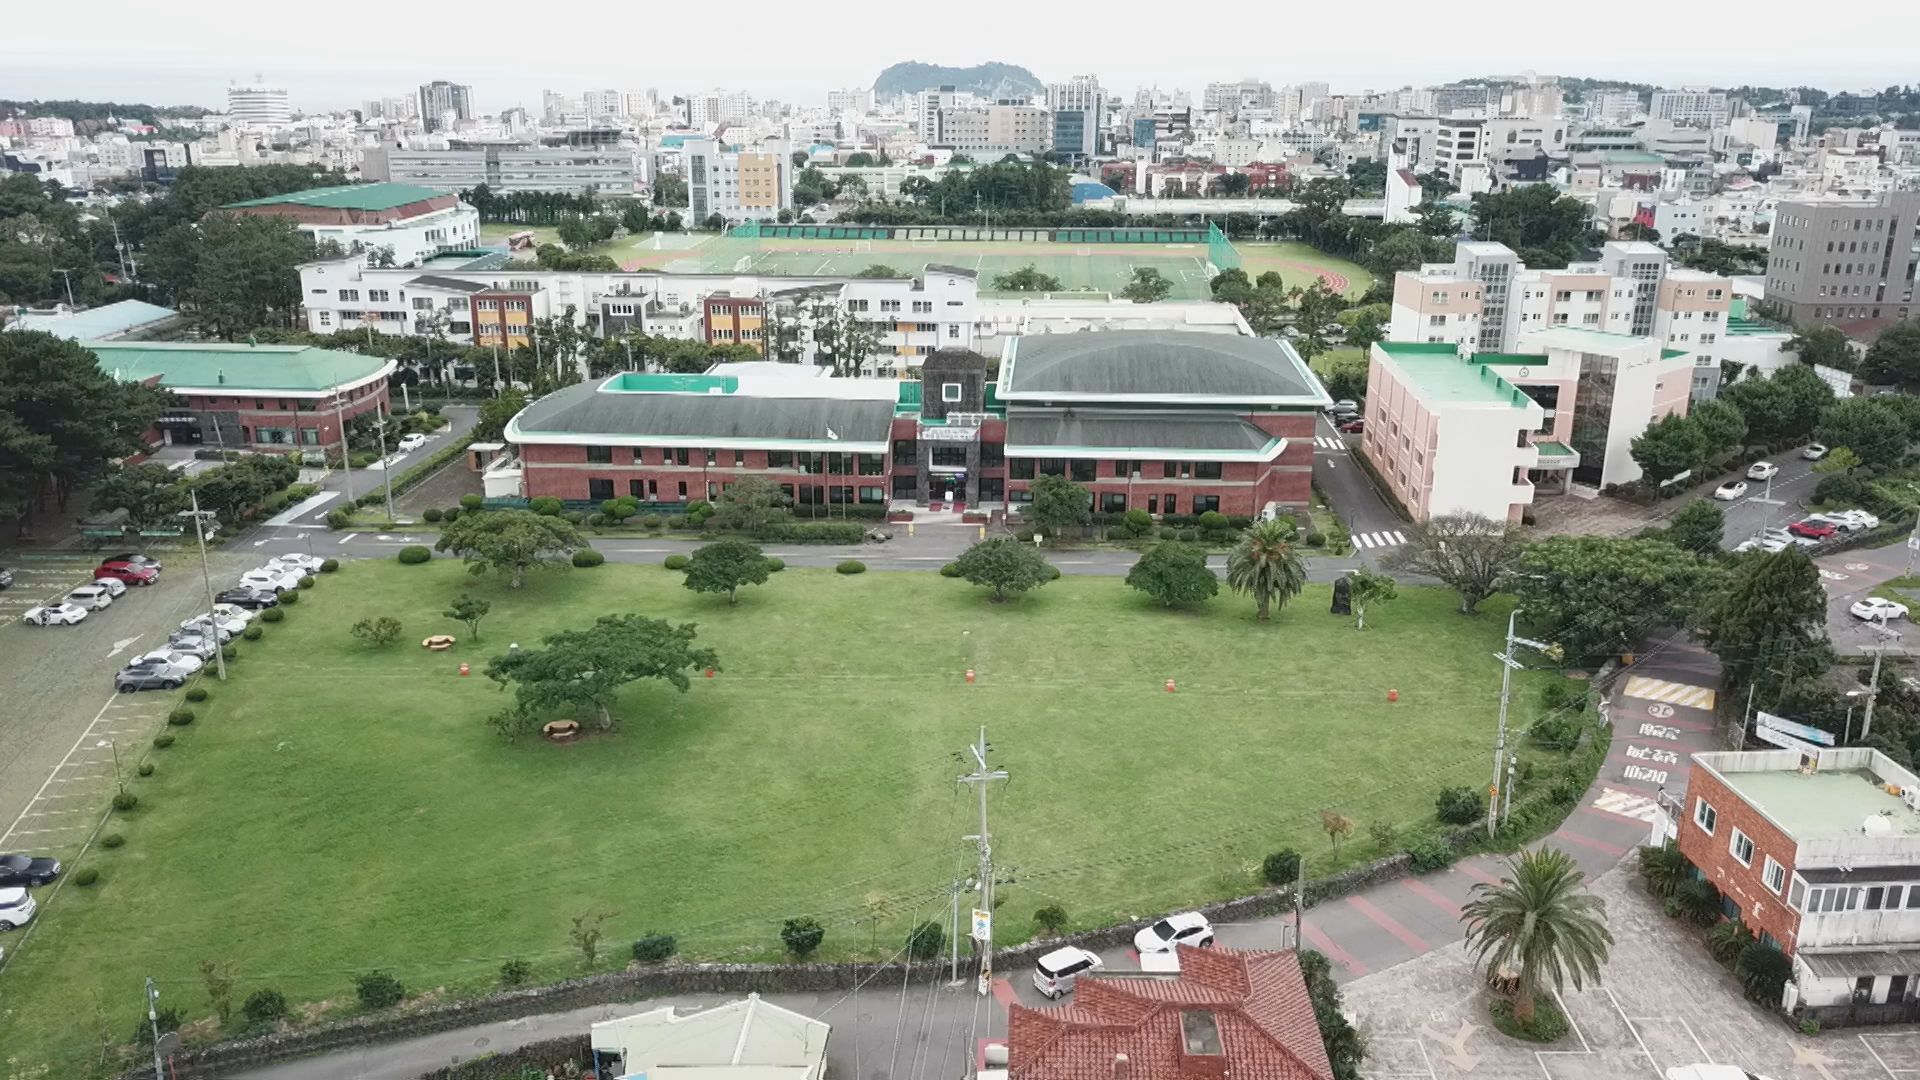 서귀포시 도시우회도로 개설 구간에 포함된 서귀포 학생문화원 앞 잔디광장